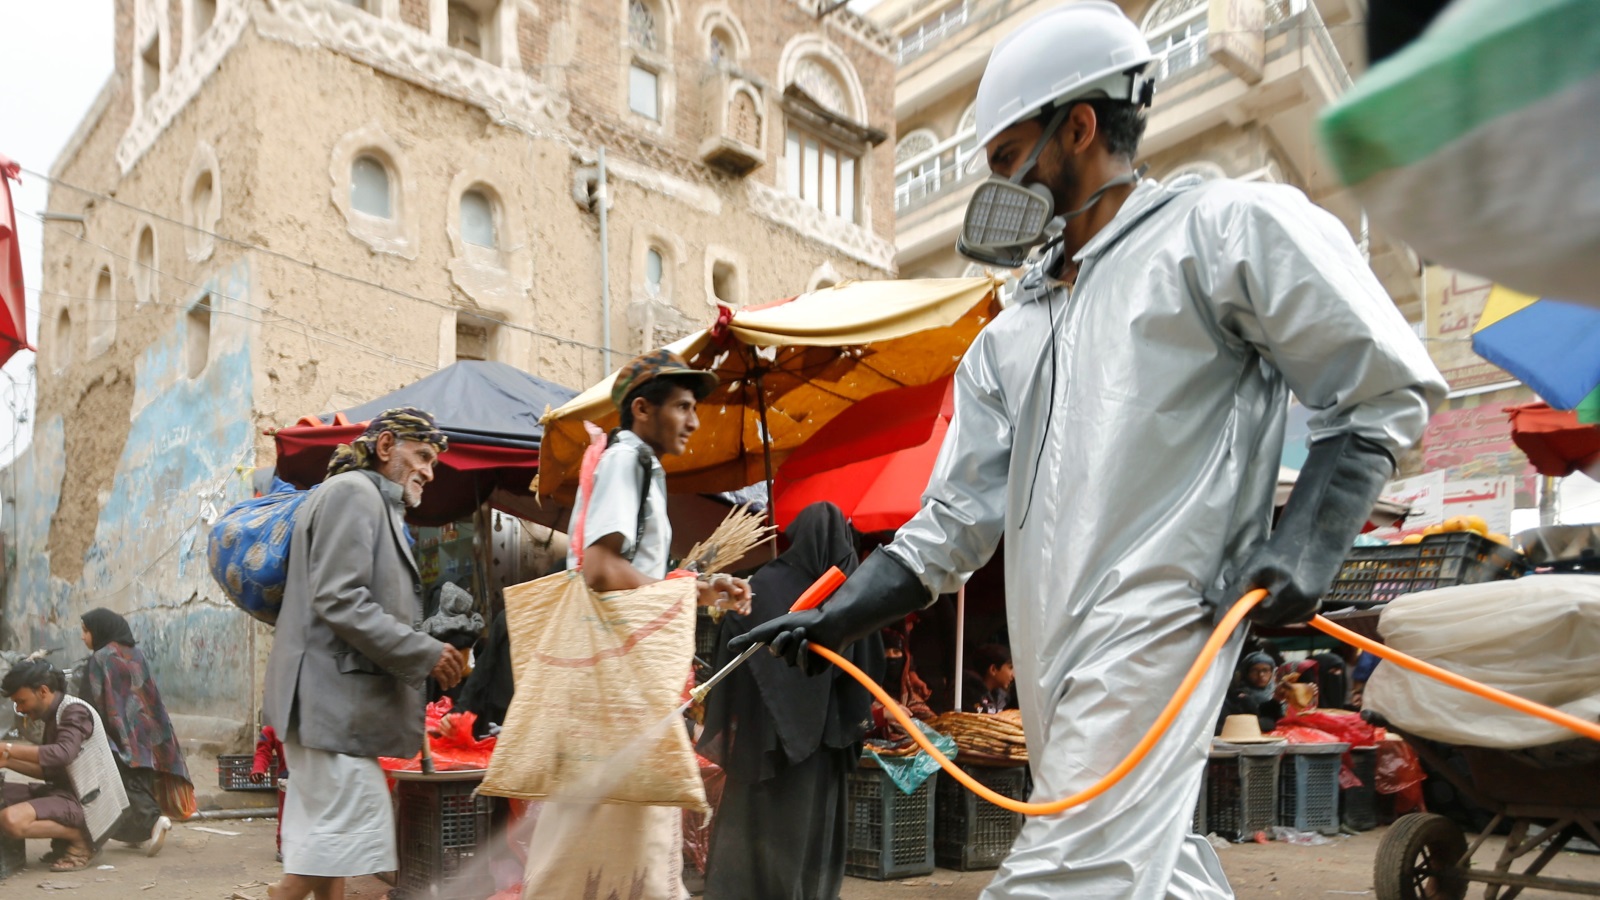 تعقيم سوق في صنعاء توقيا من فيروس كورونا (رويترز)